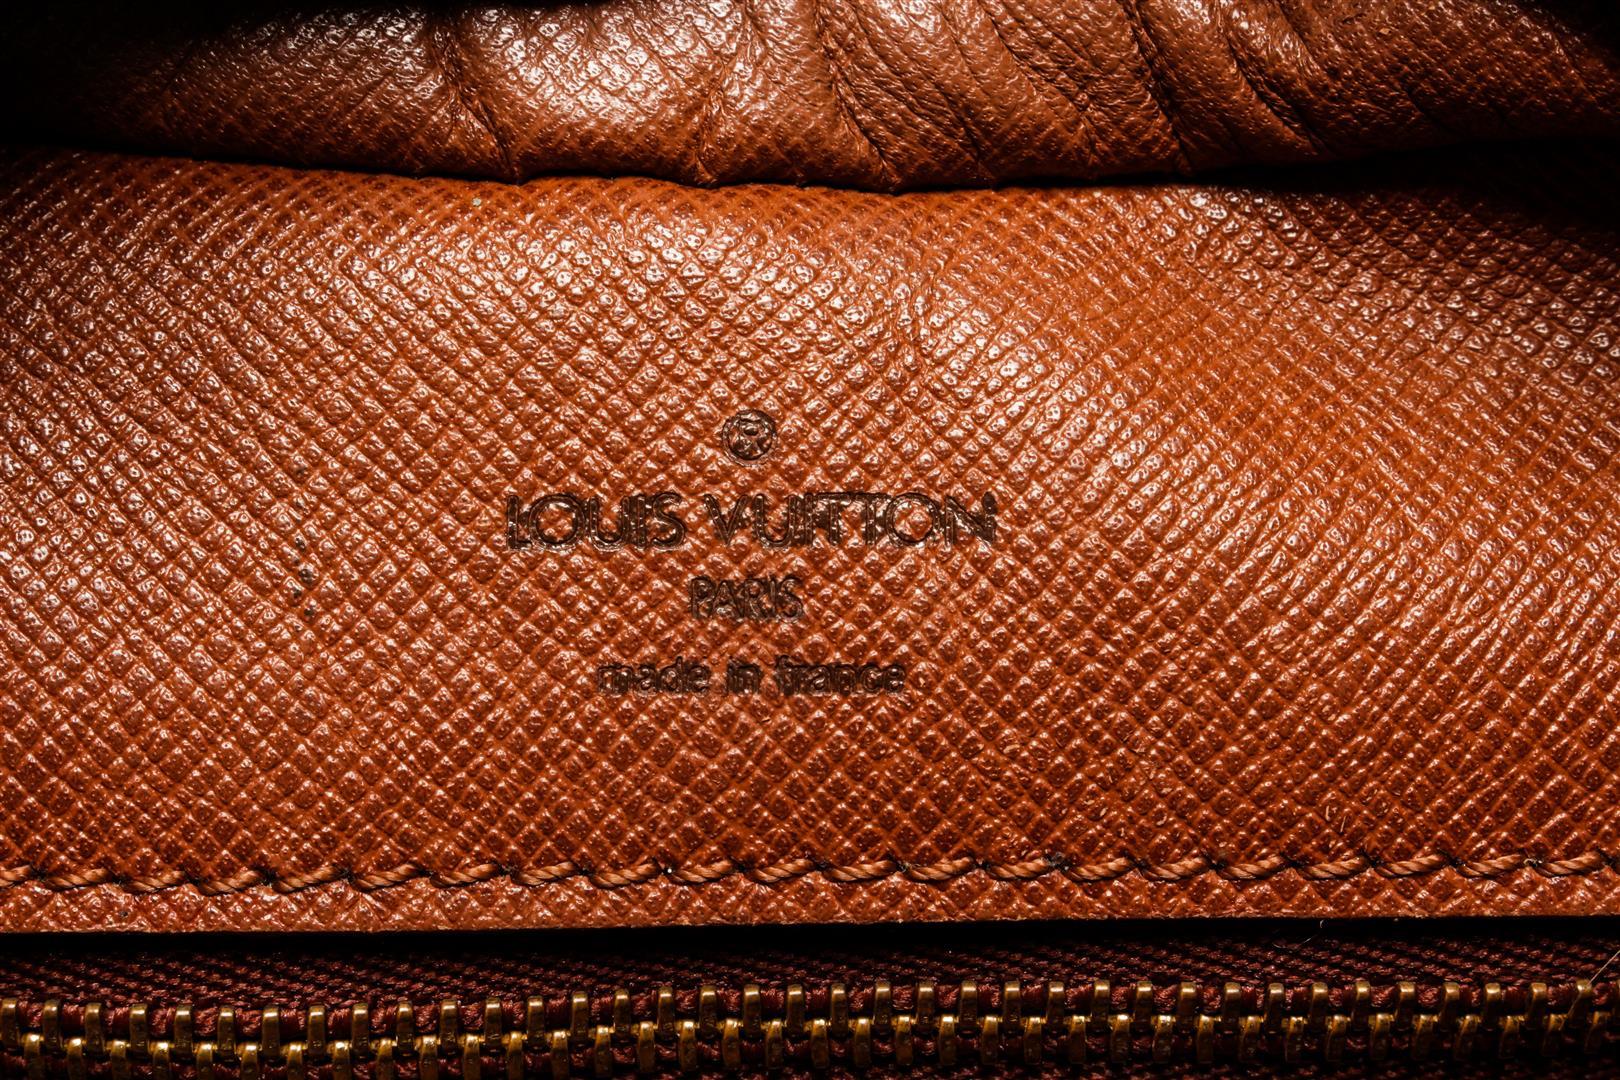 Louis Vuitton Monogram Boulogne PM Shoulder Bag